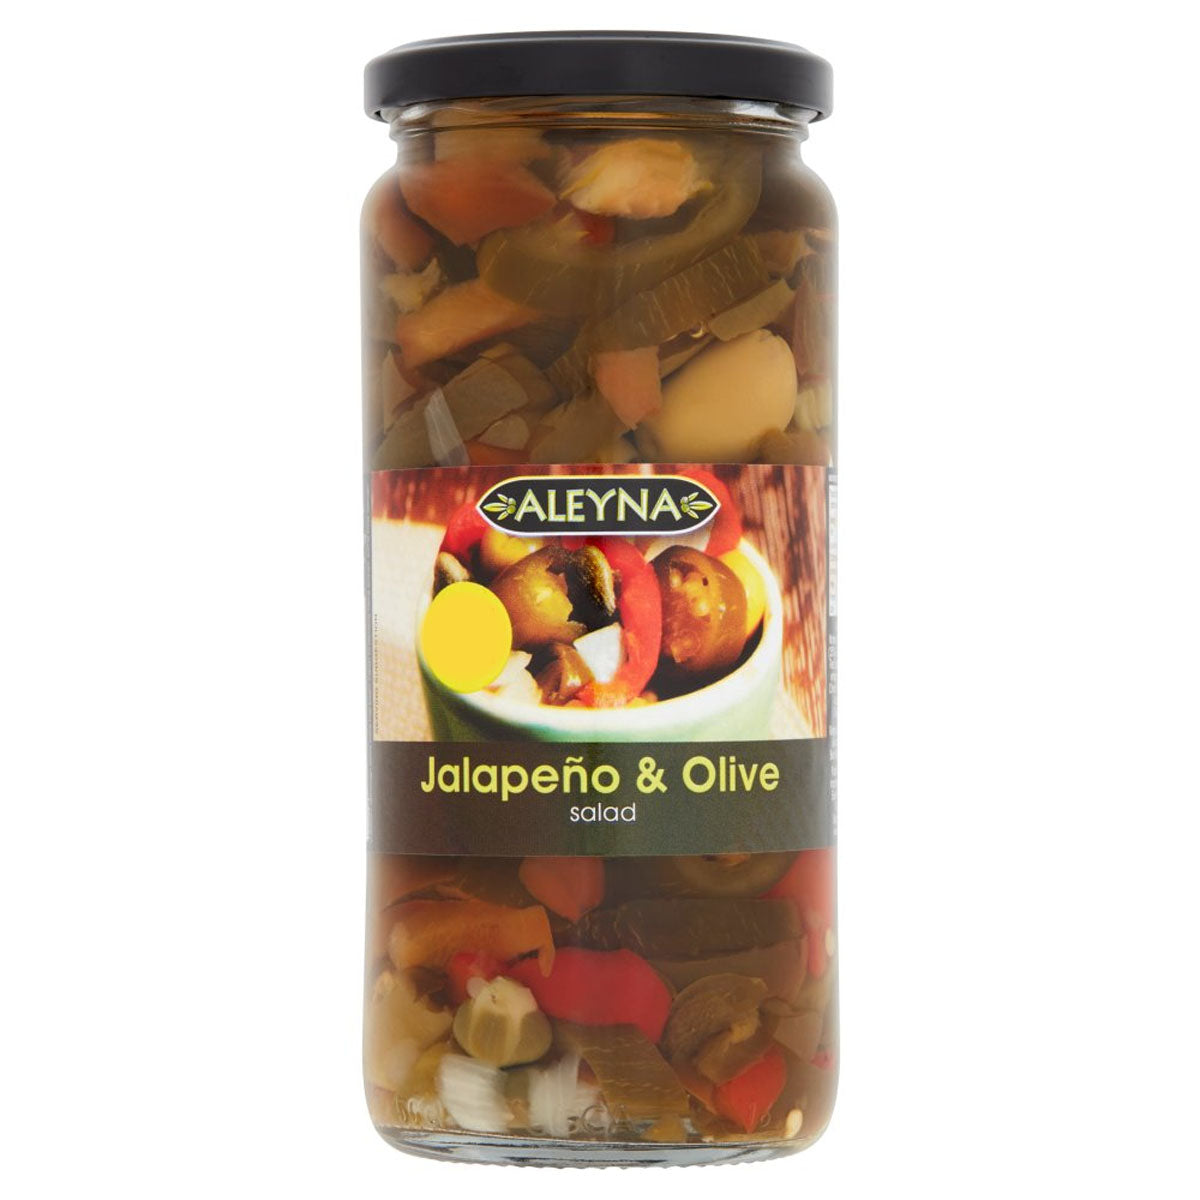 A jar of Aleyna - Jalapeno & Olive Salad - 480g on a white background.